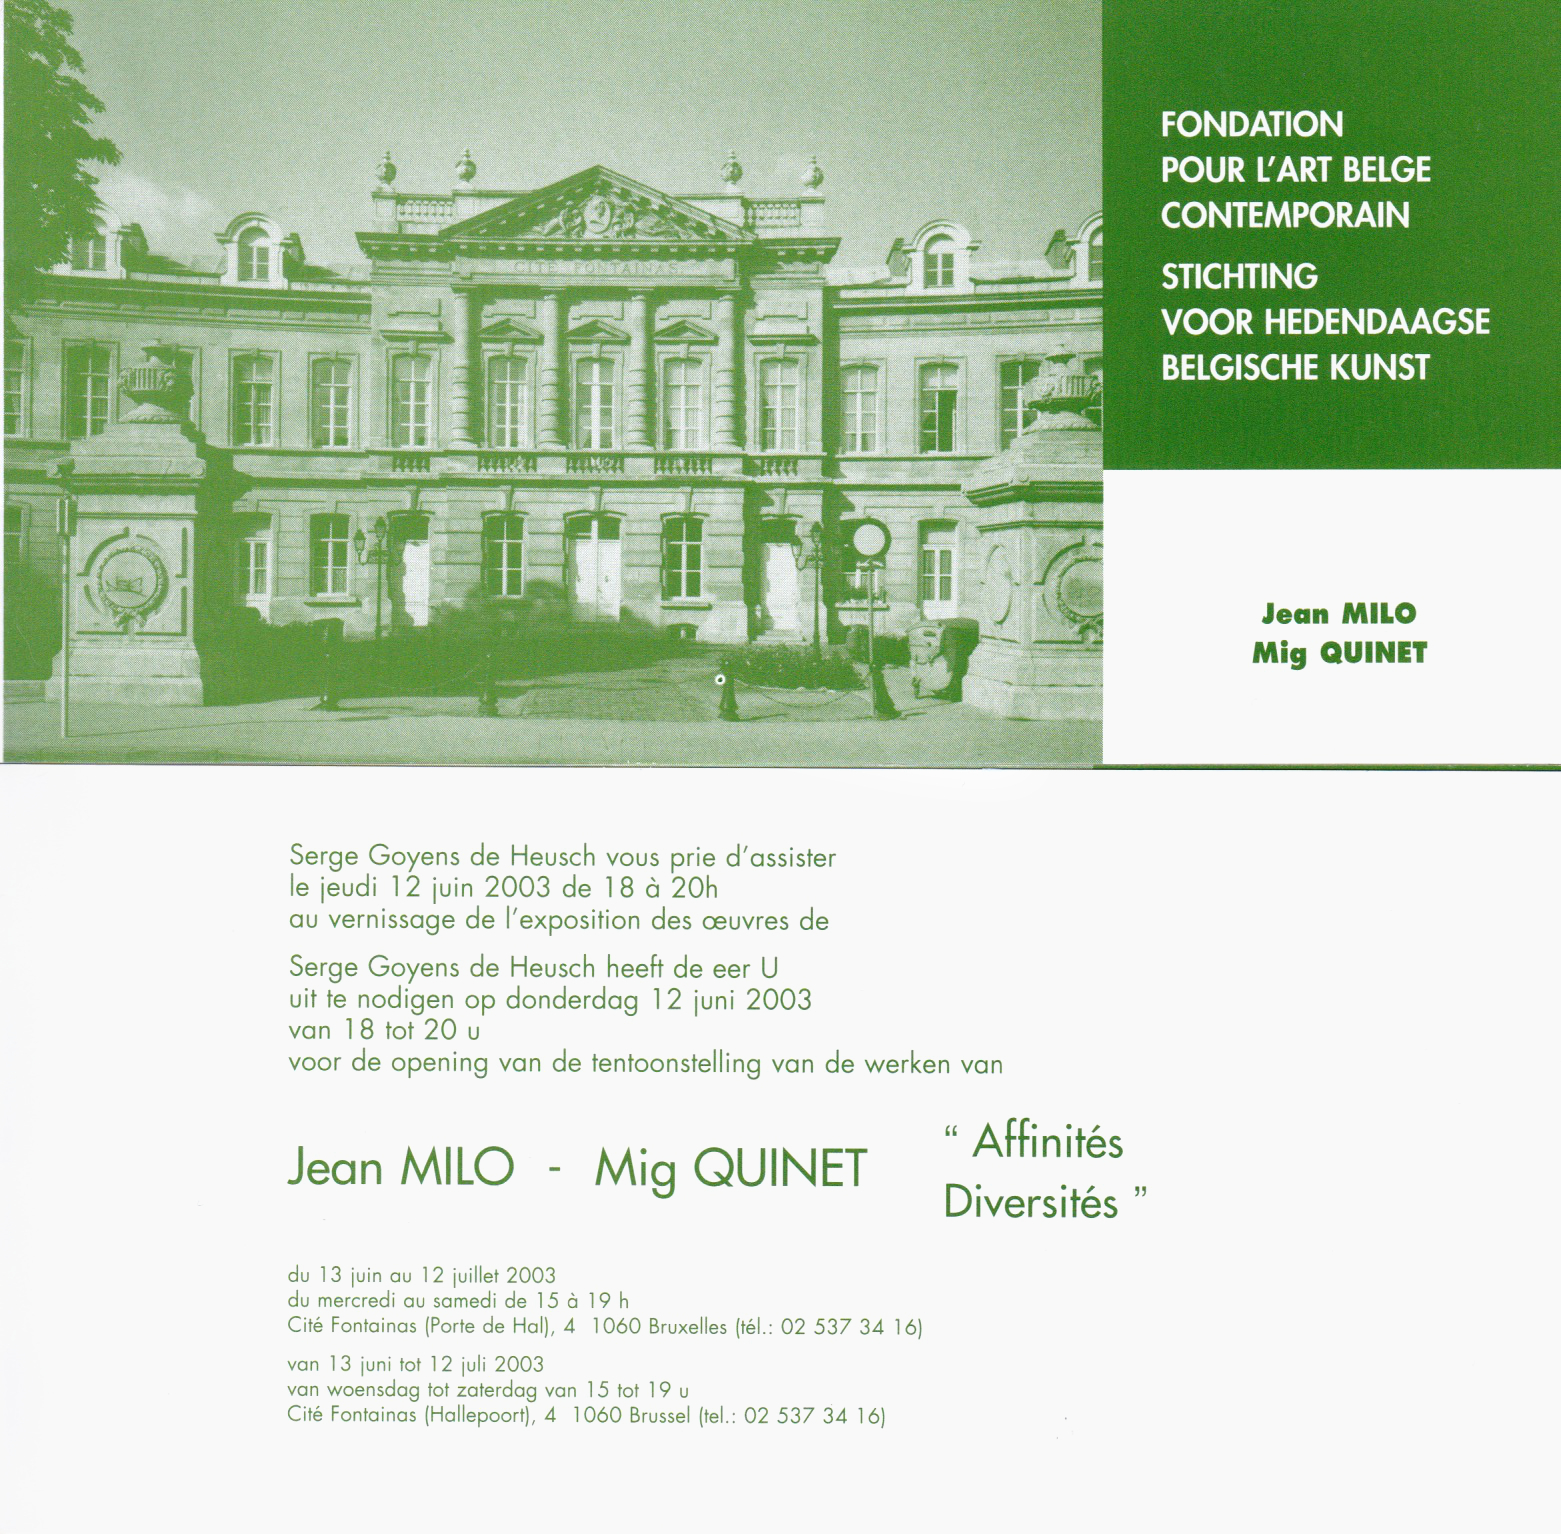 Jean Milo Mig Quinet Affinités Diversités, Fondation pour l’Art Belge Contemporain, Bruxelles, 2003